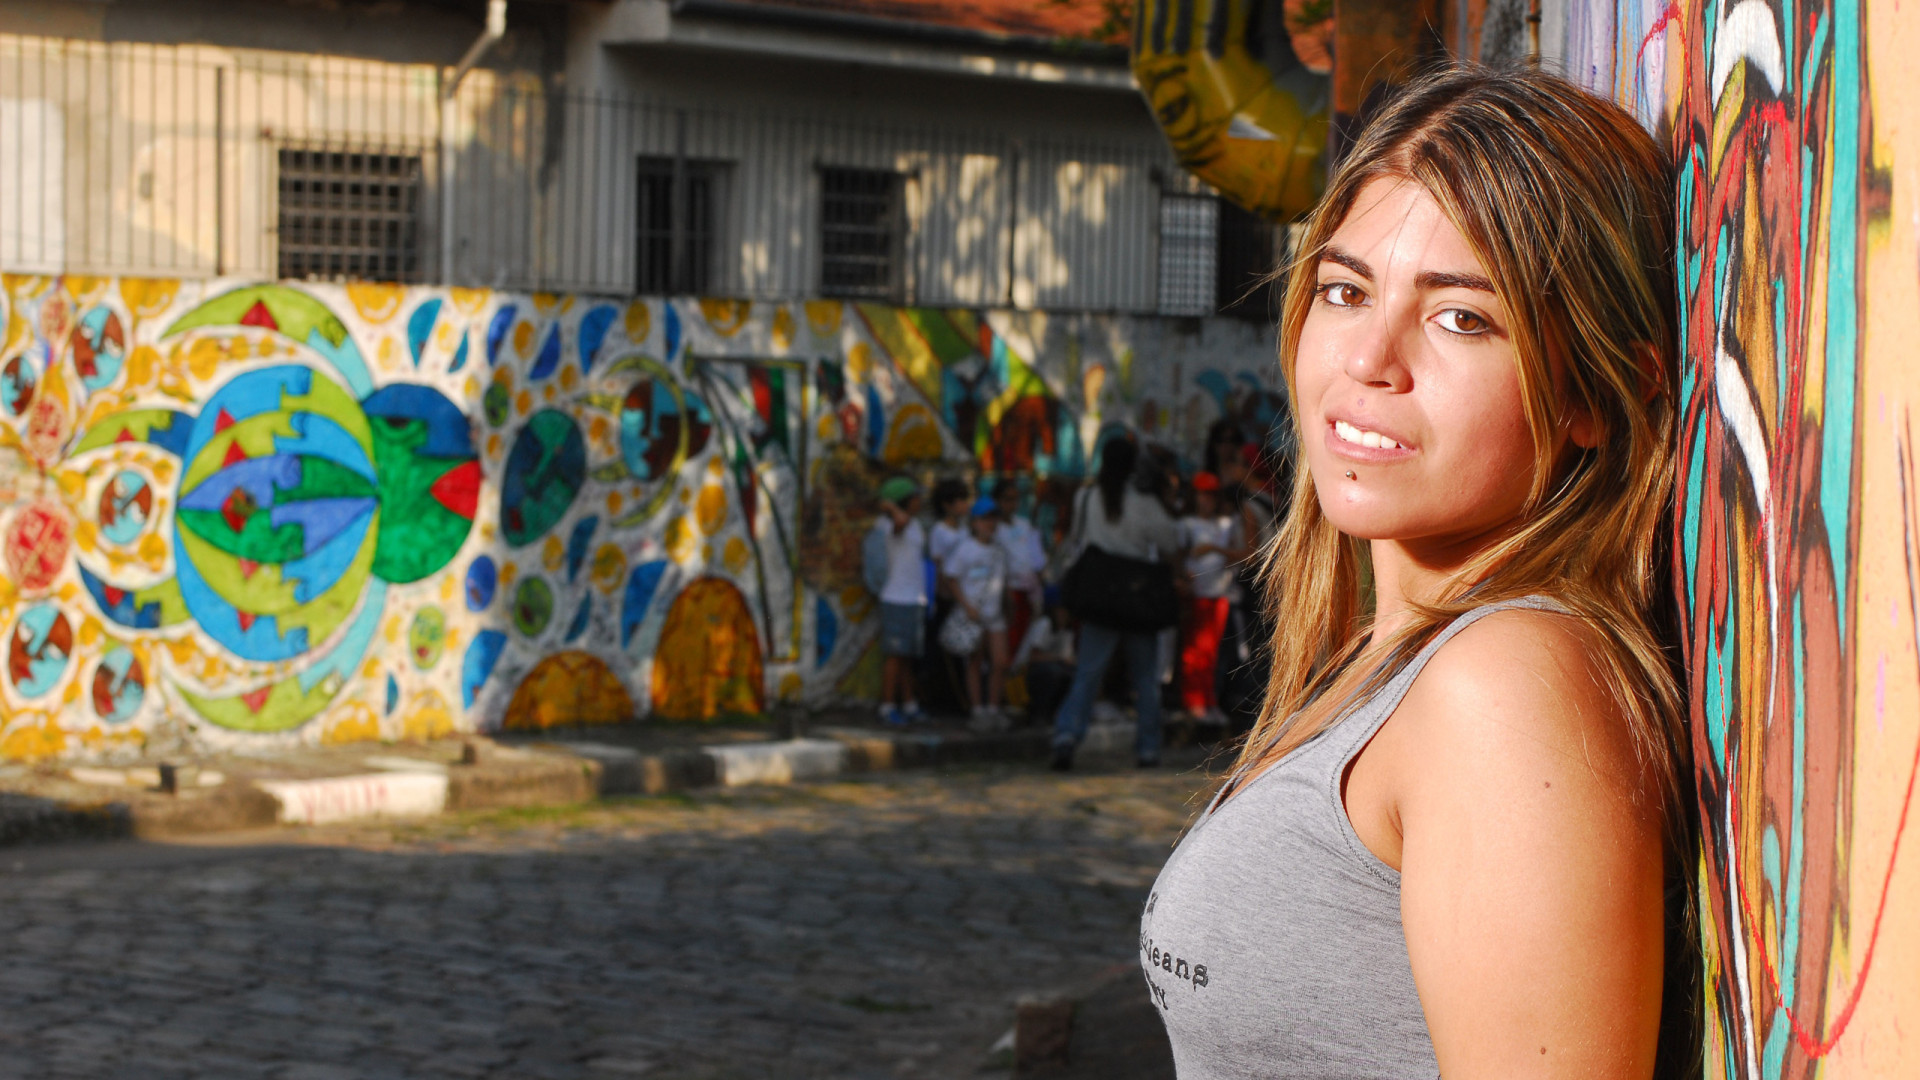 Bruna Surfistinha diz ter sido agredida por ex e consegue medida protetiva